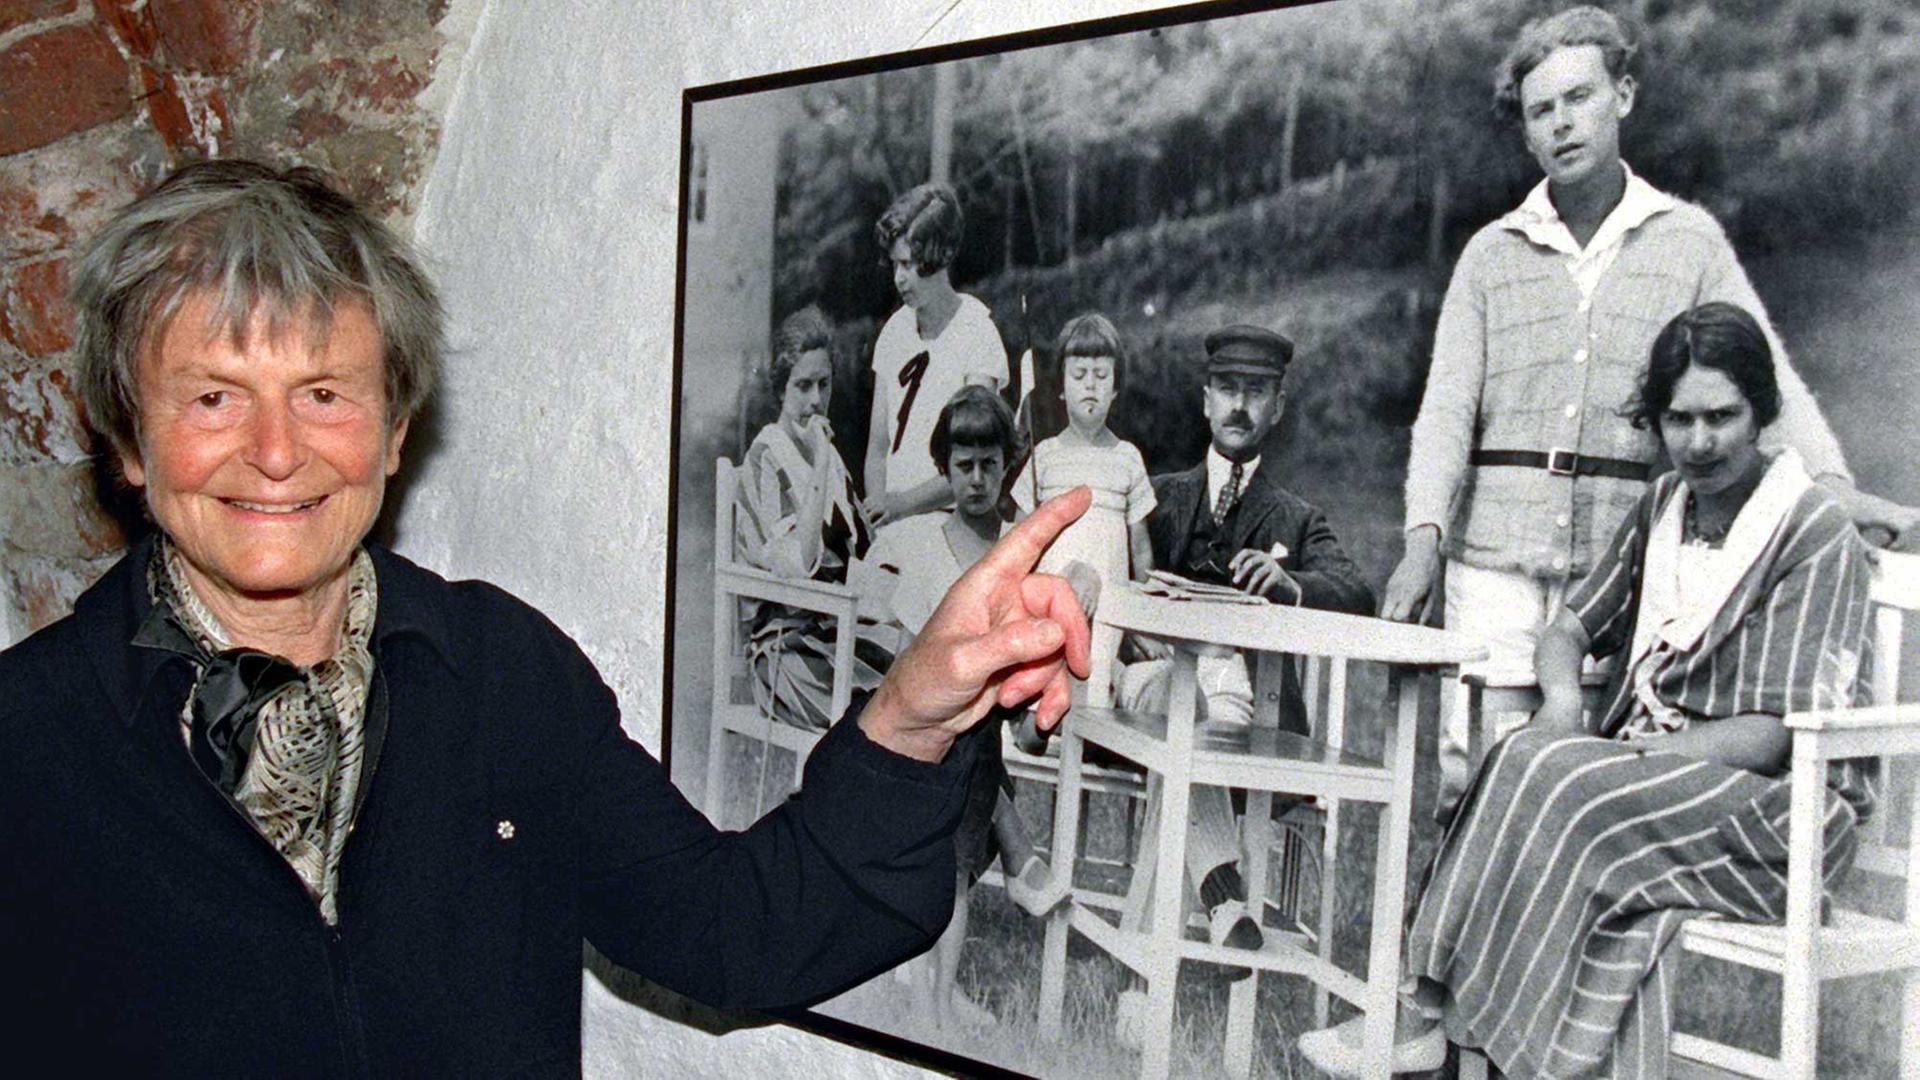 Elisabeth Mann Borgese 1998 vor einem Familienfoto im Lübecker Buddenbrookhaus. Die Wissenschaftlerin, Schriftstellerin und Mitbegründerin des "Club of Rome" lebte von 1918 - 2002. Sie war die jüngste Tochter des Schriftstellers Thomas Mann.